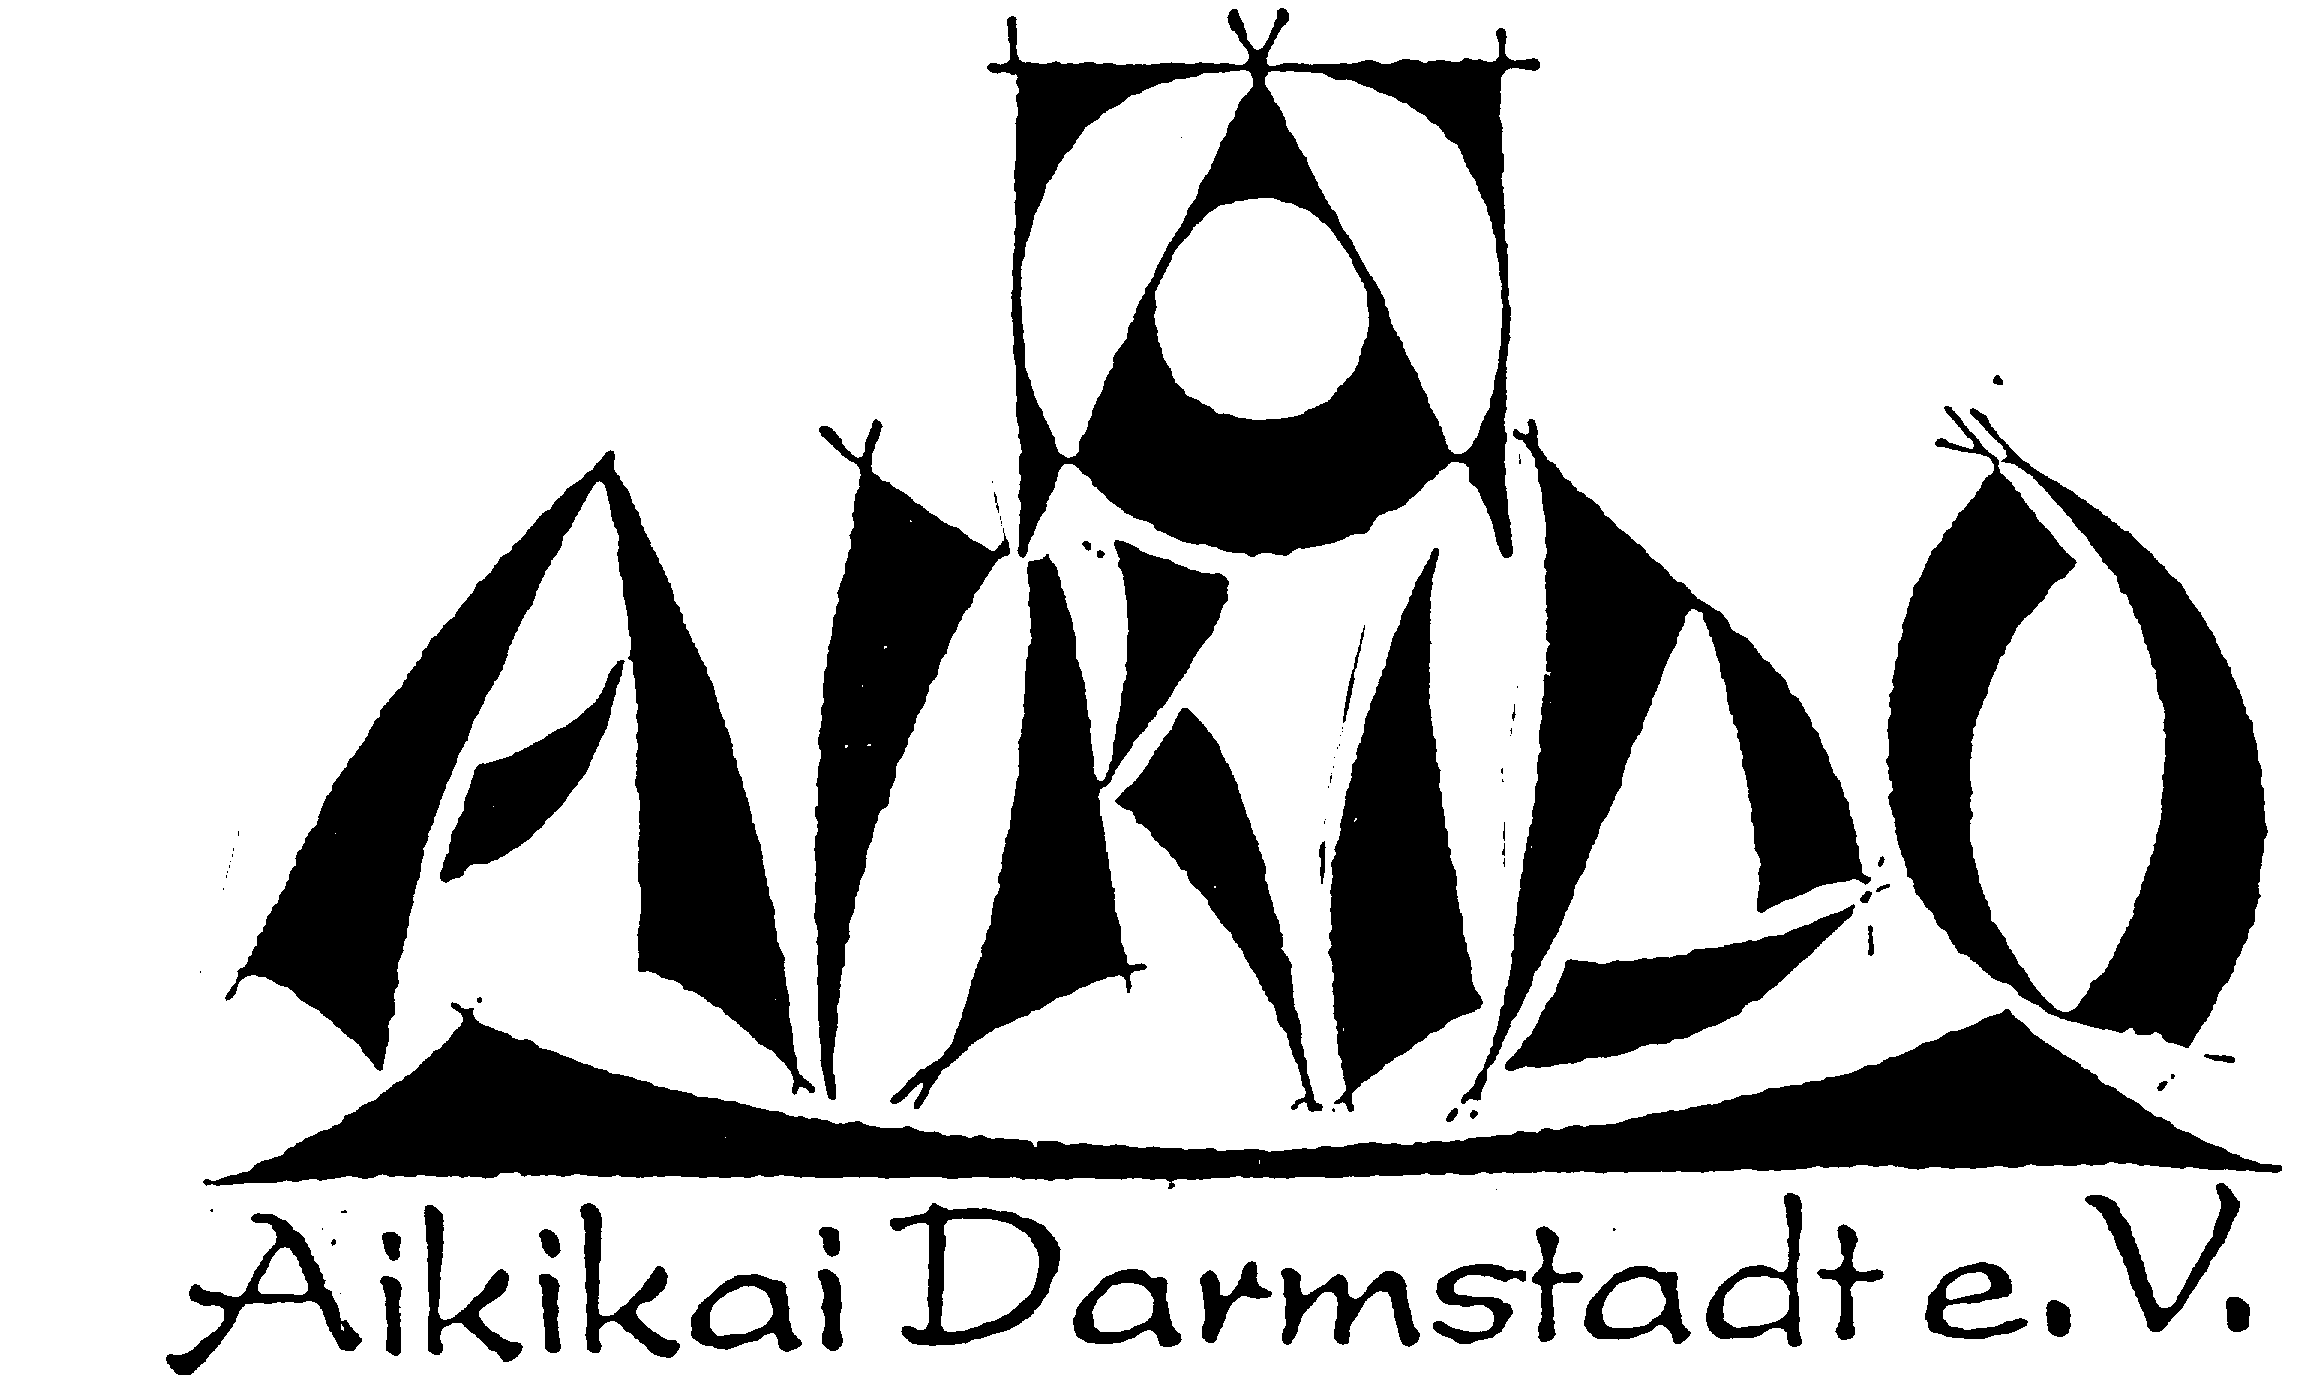 Aikido in Darmstadt, Ein Rückblick zum 2o jährigen Jubiläum des Aikikai Darmstadt e.v.